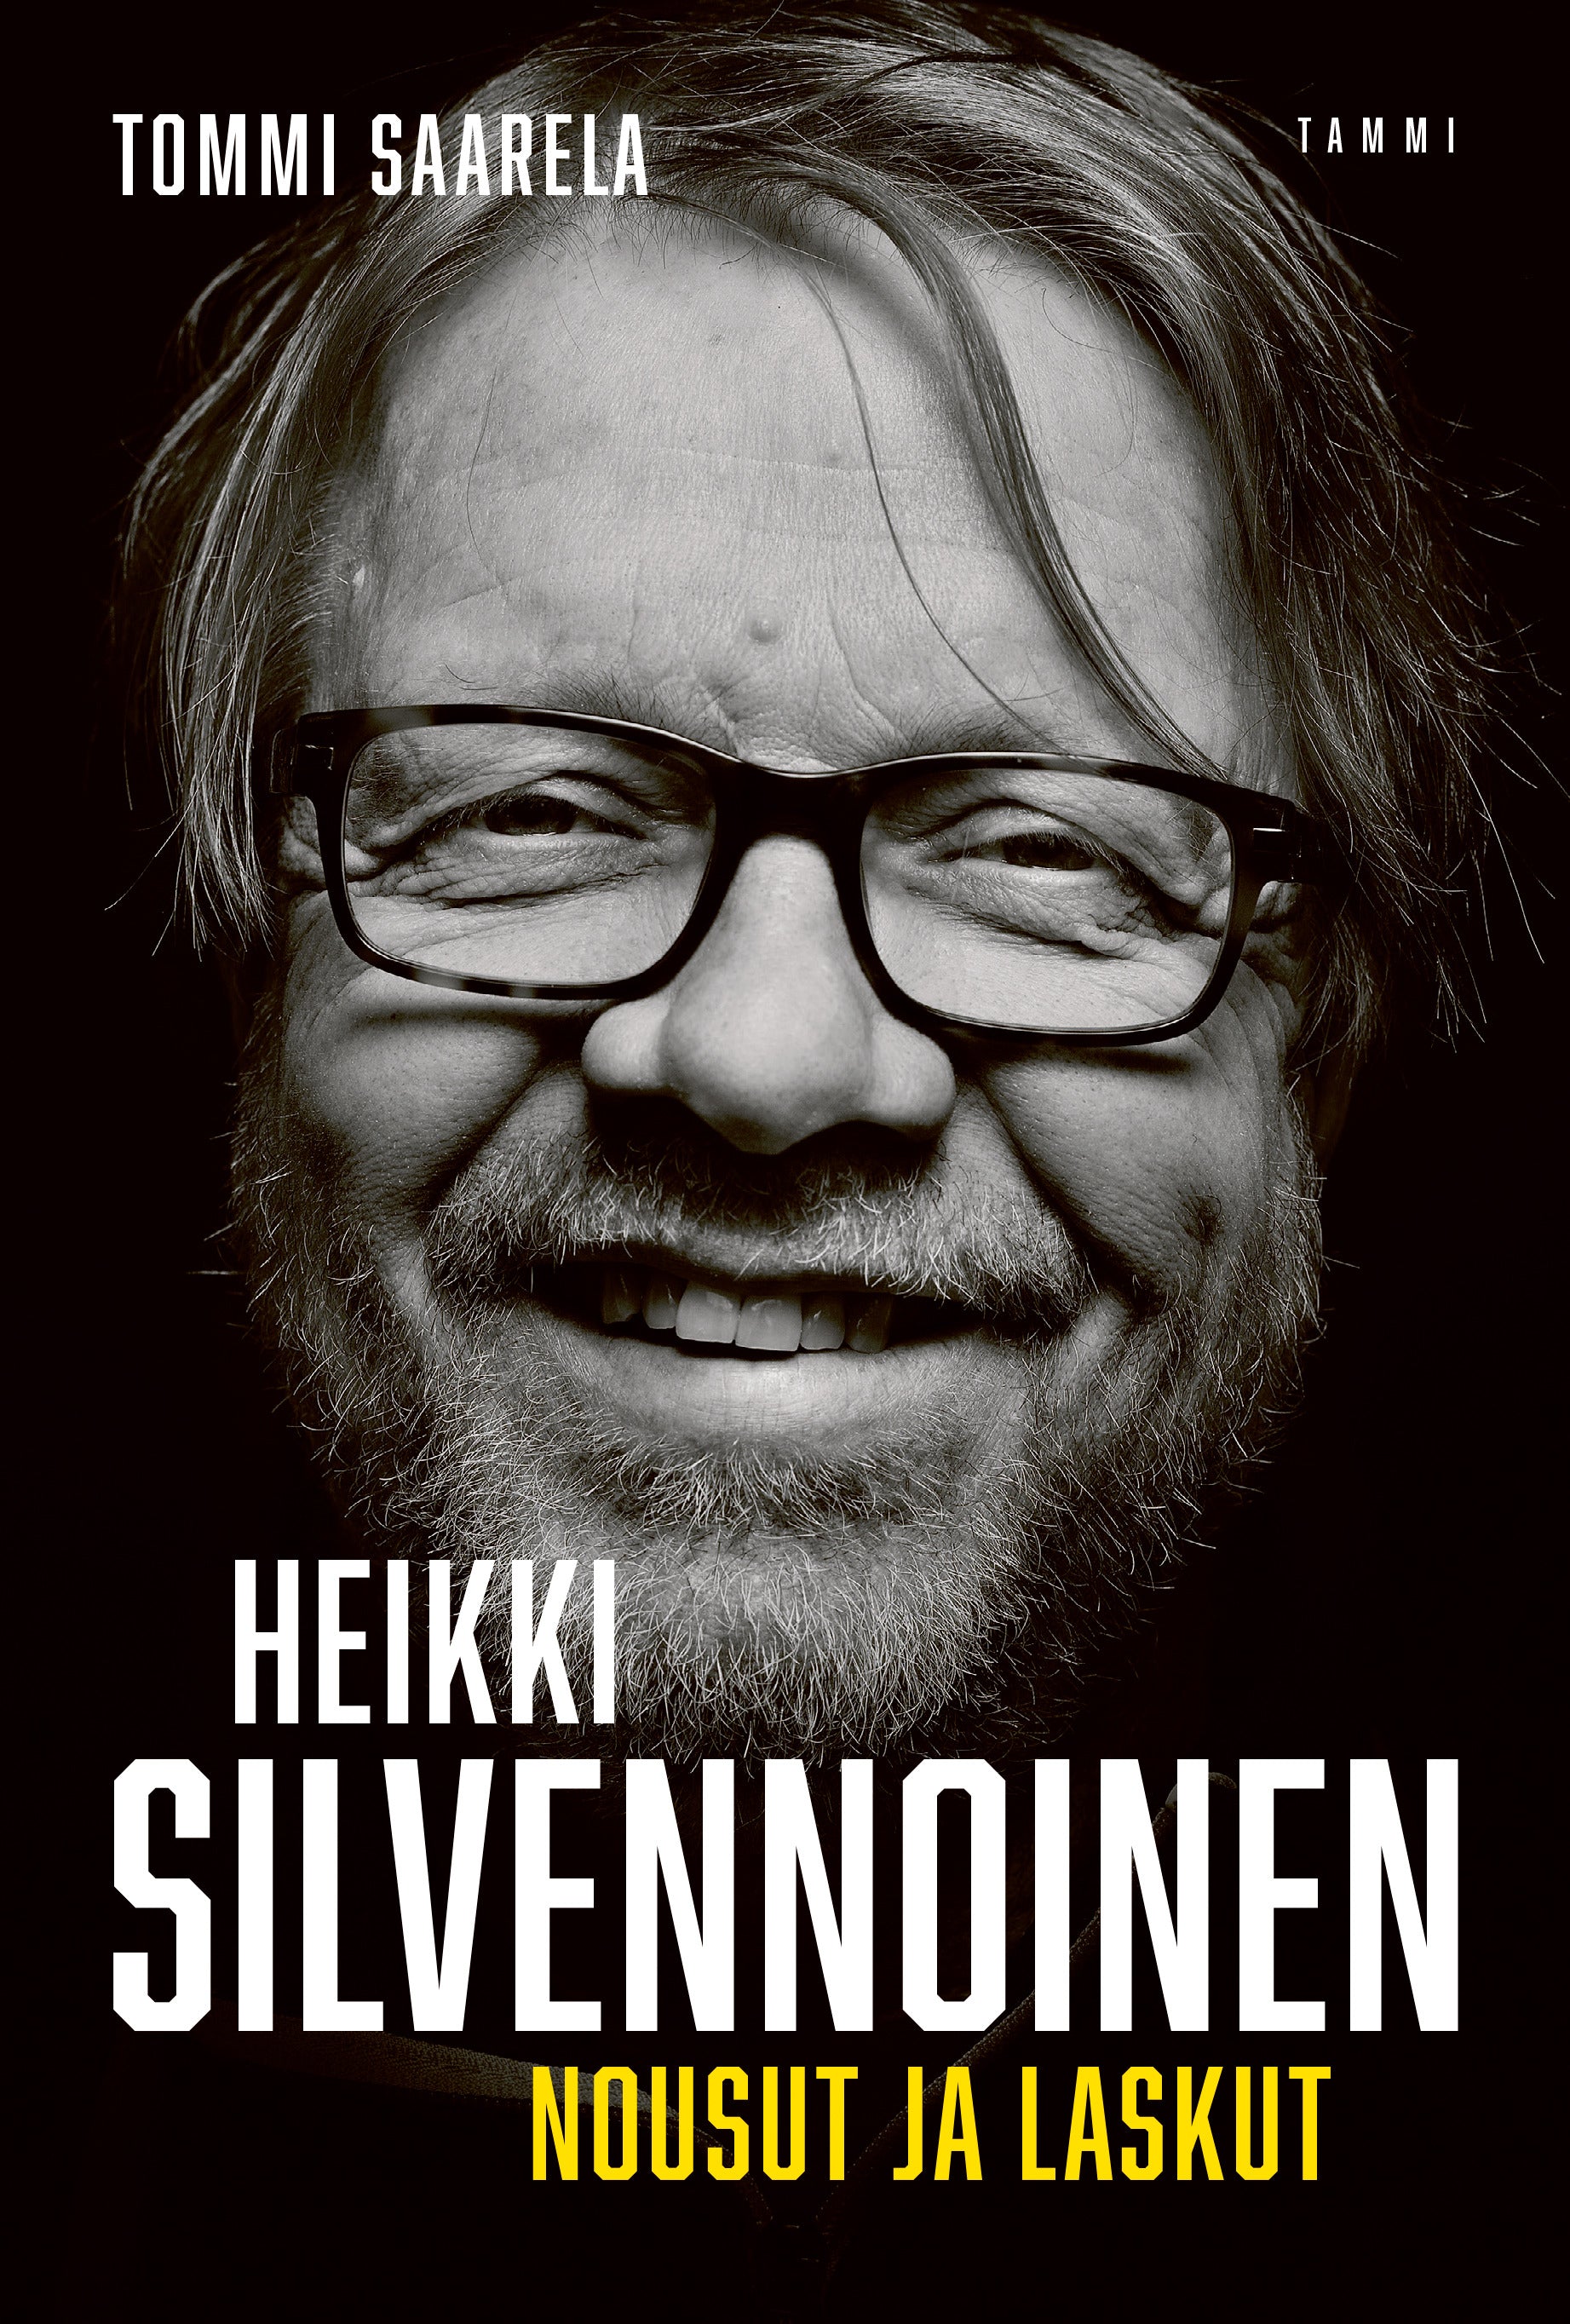 Heikki Silvennoinen